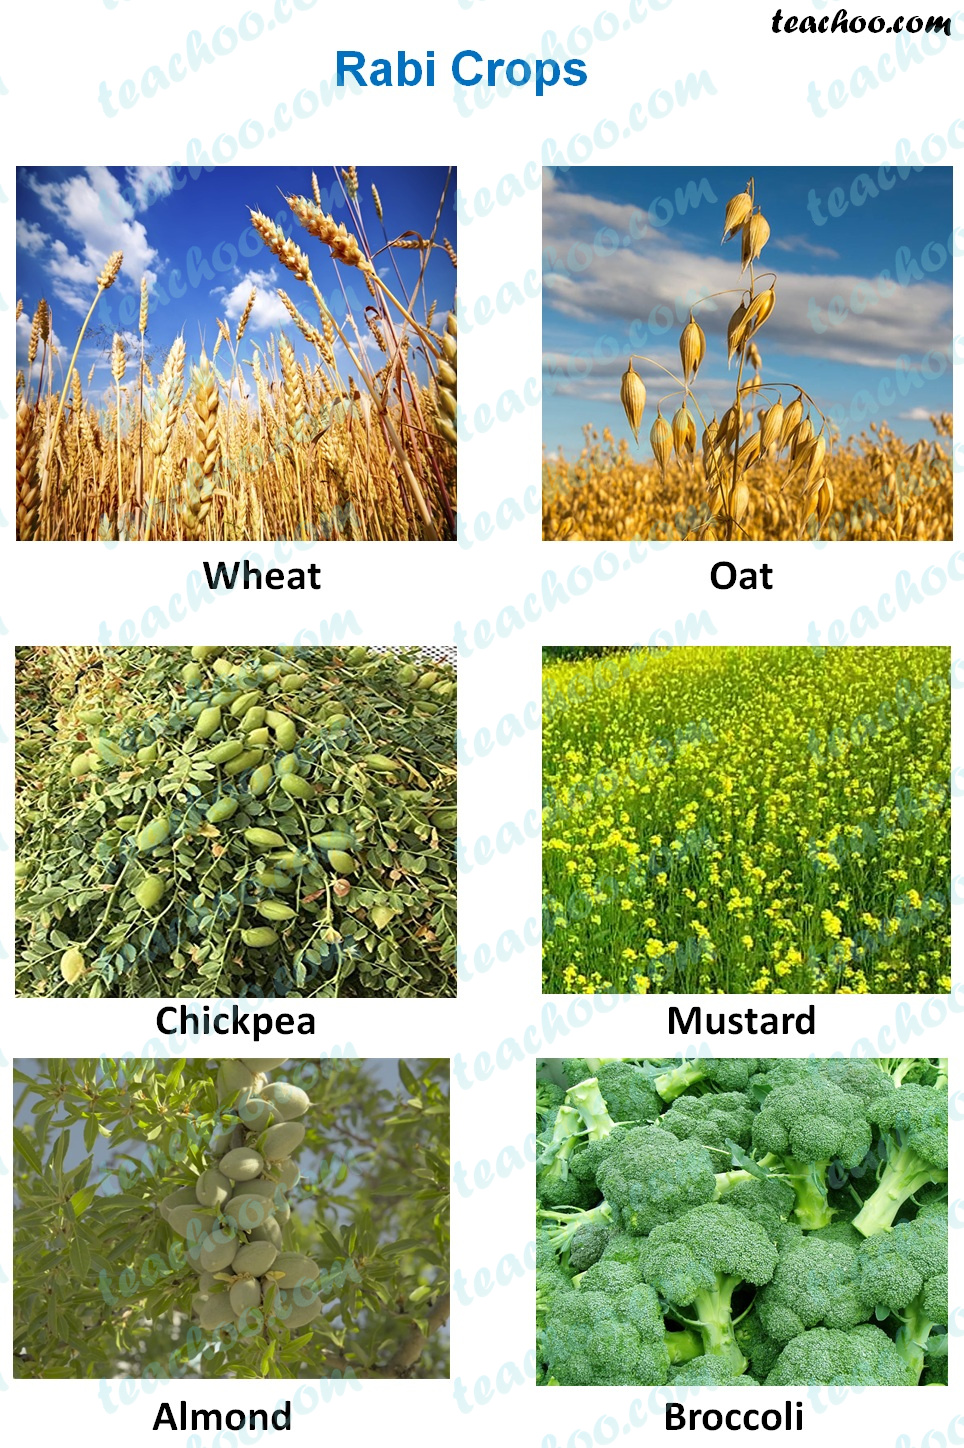 rabi-crops---examples.jpg